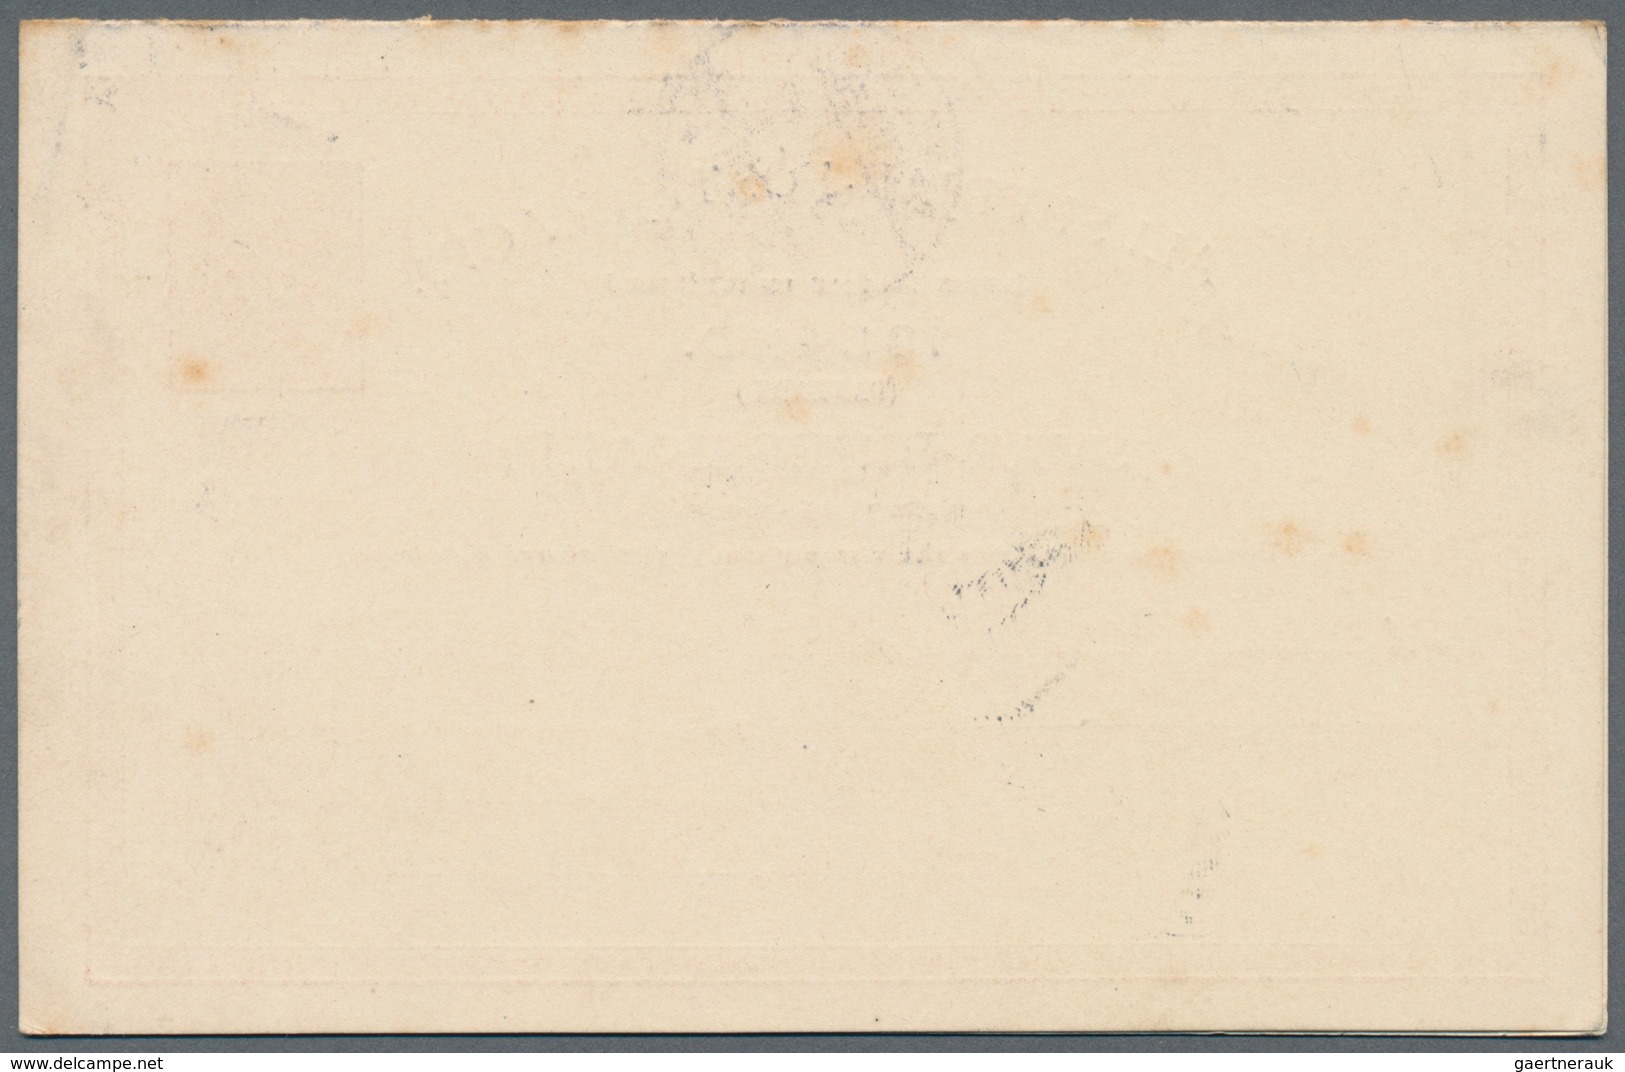 Island - Ganzsachen: 1890, 10 Aur Double Stationery Cards In Type "I" And "II" Sent Fron REYKJAVIK 1 - Postwaardestukken